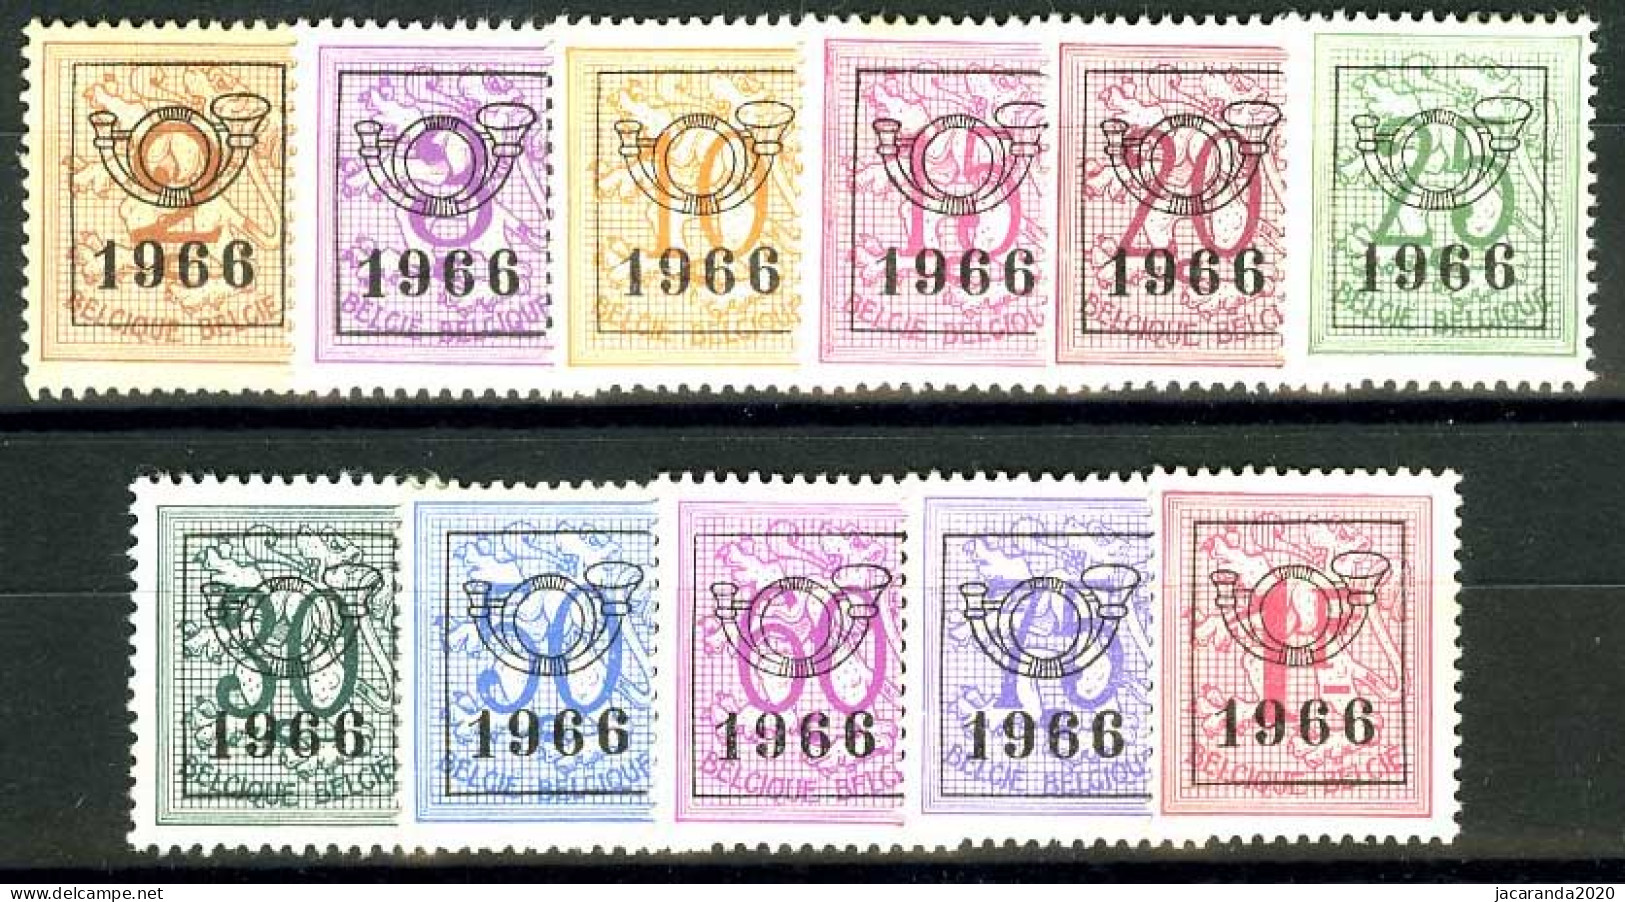 België PRE769/PRE779 ** - 1966 - Cijfer Op Heraldieke Leeuw - Chiffre Sur Lion Héraldique - Preo Reeks 59 - 11w. - Typografisch 1951-80 (Cijfer Op Leeuw)